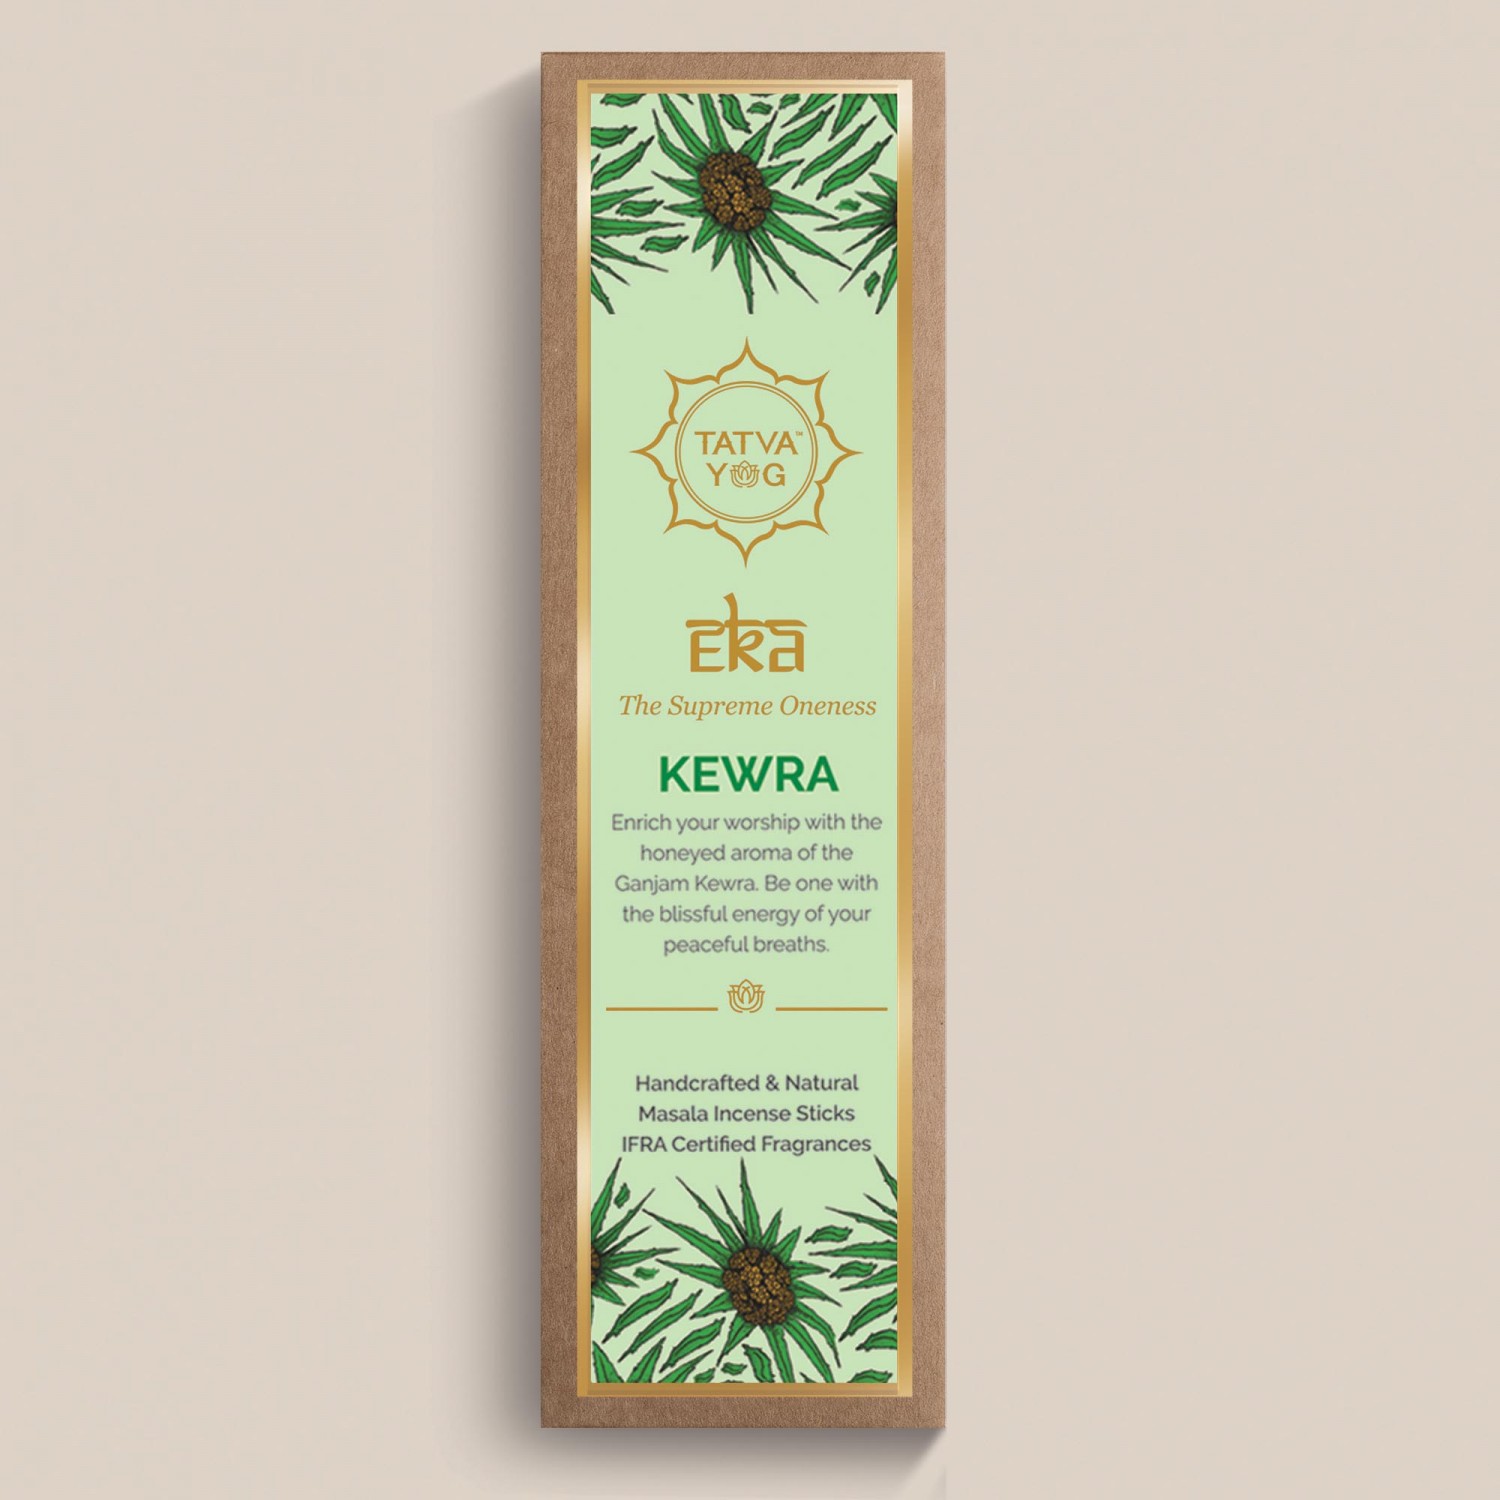 eka---kewra-handcrafted-&-natural-masala-incense-sticks